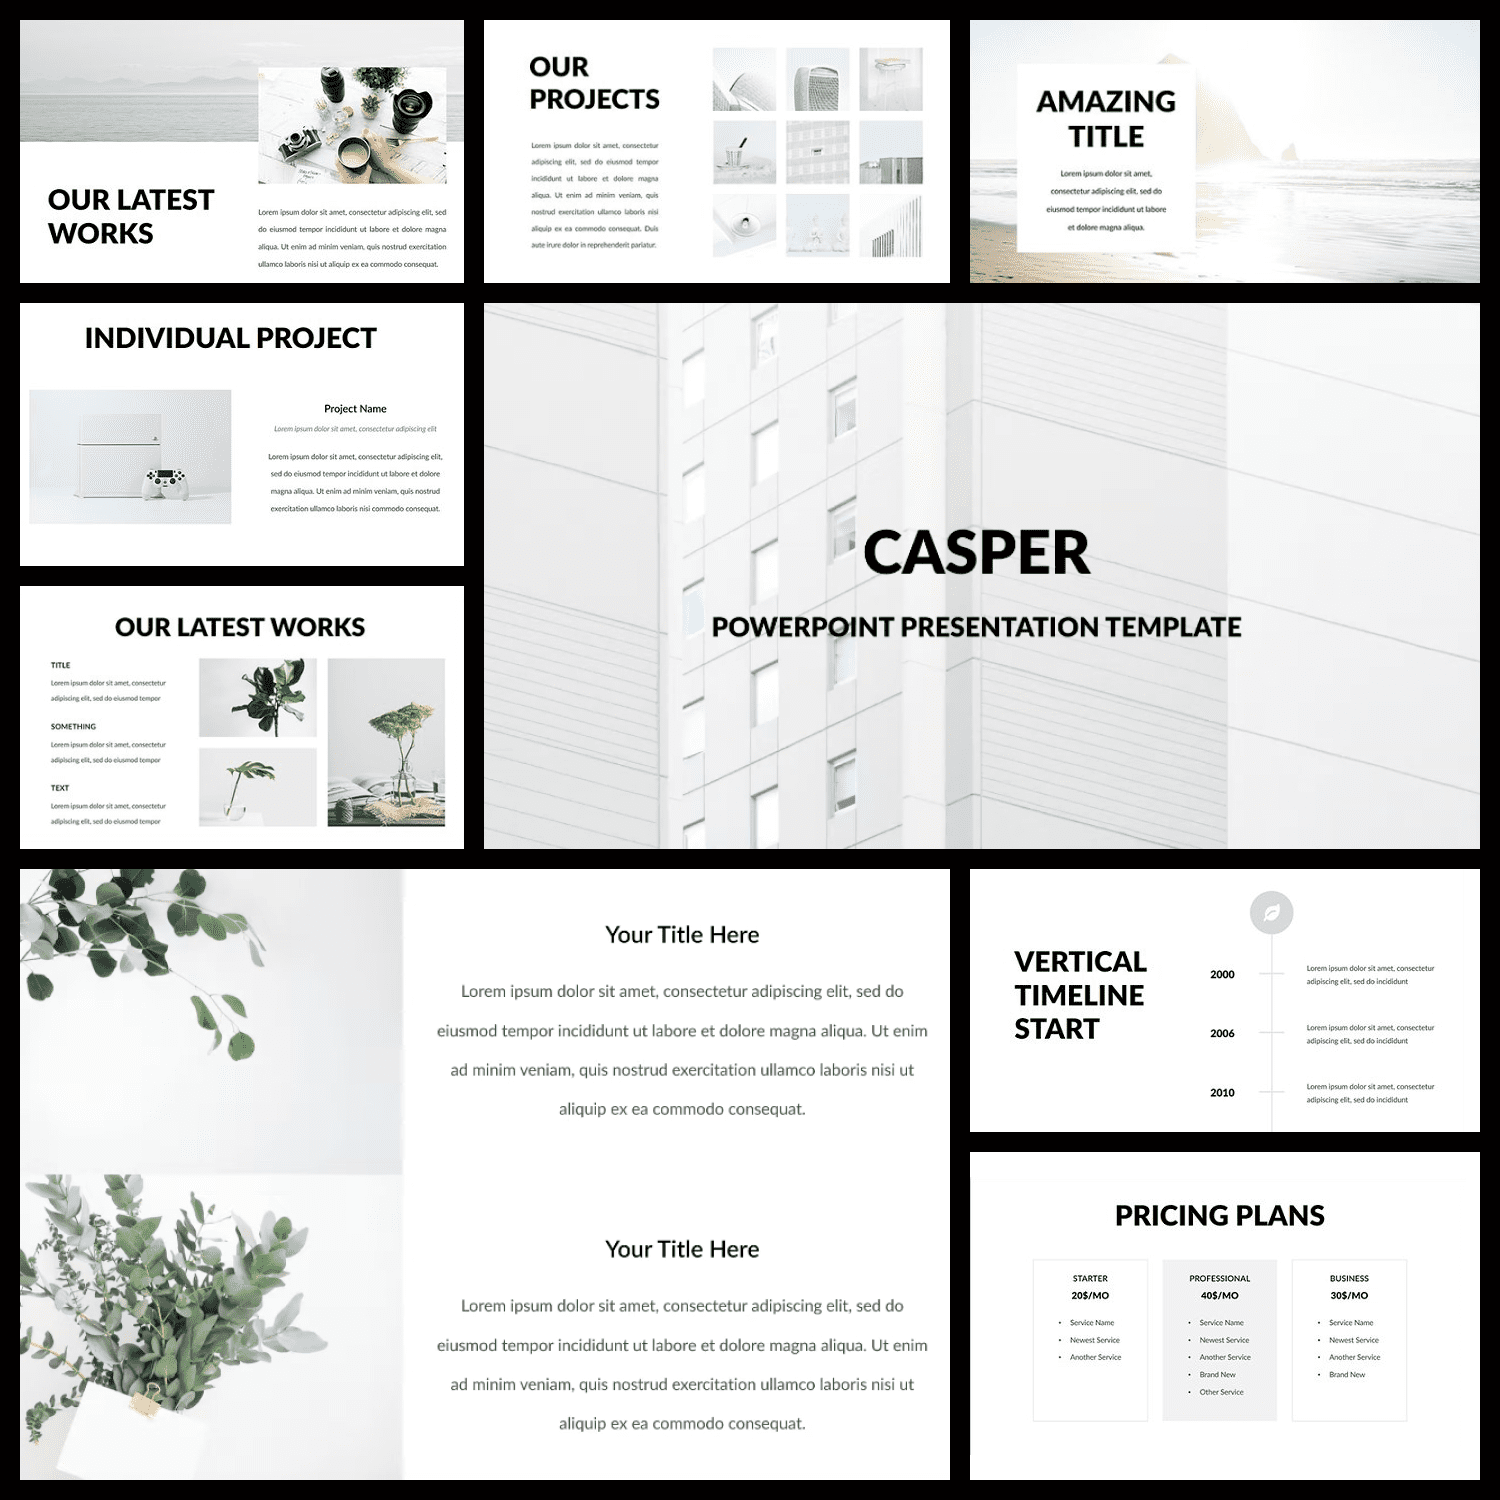 Casper - Powerpoint Template.